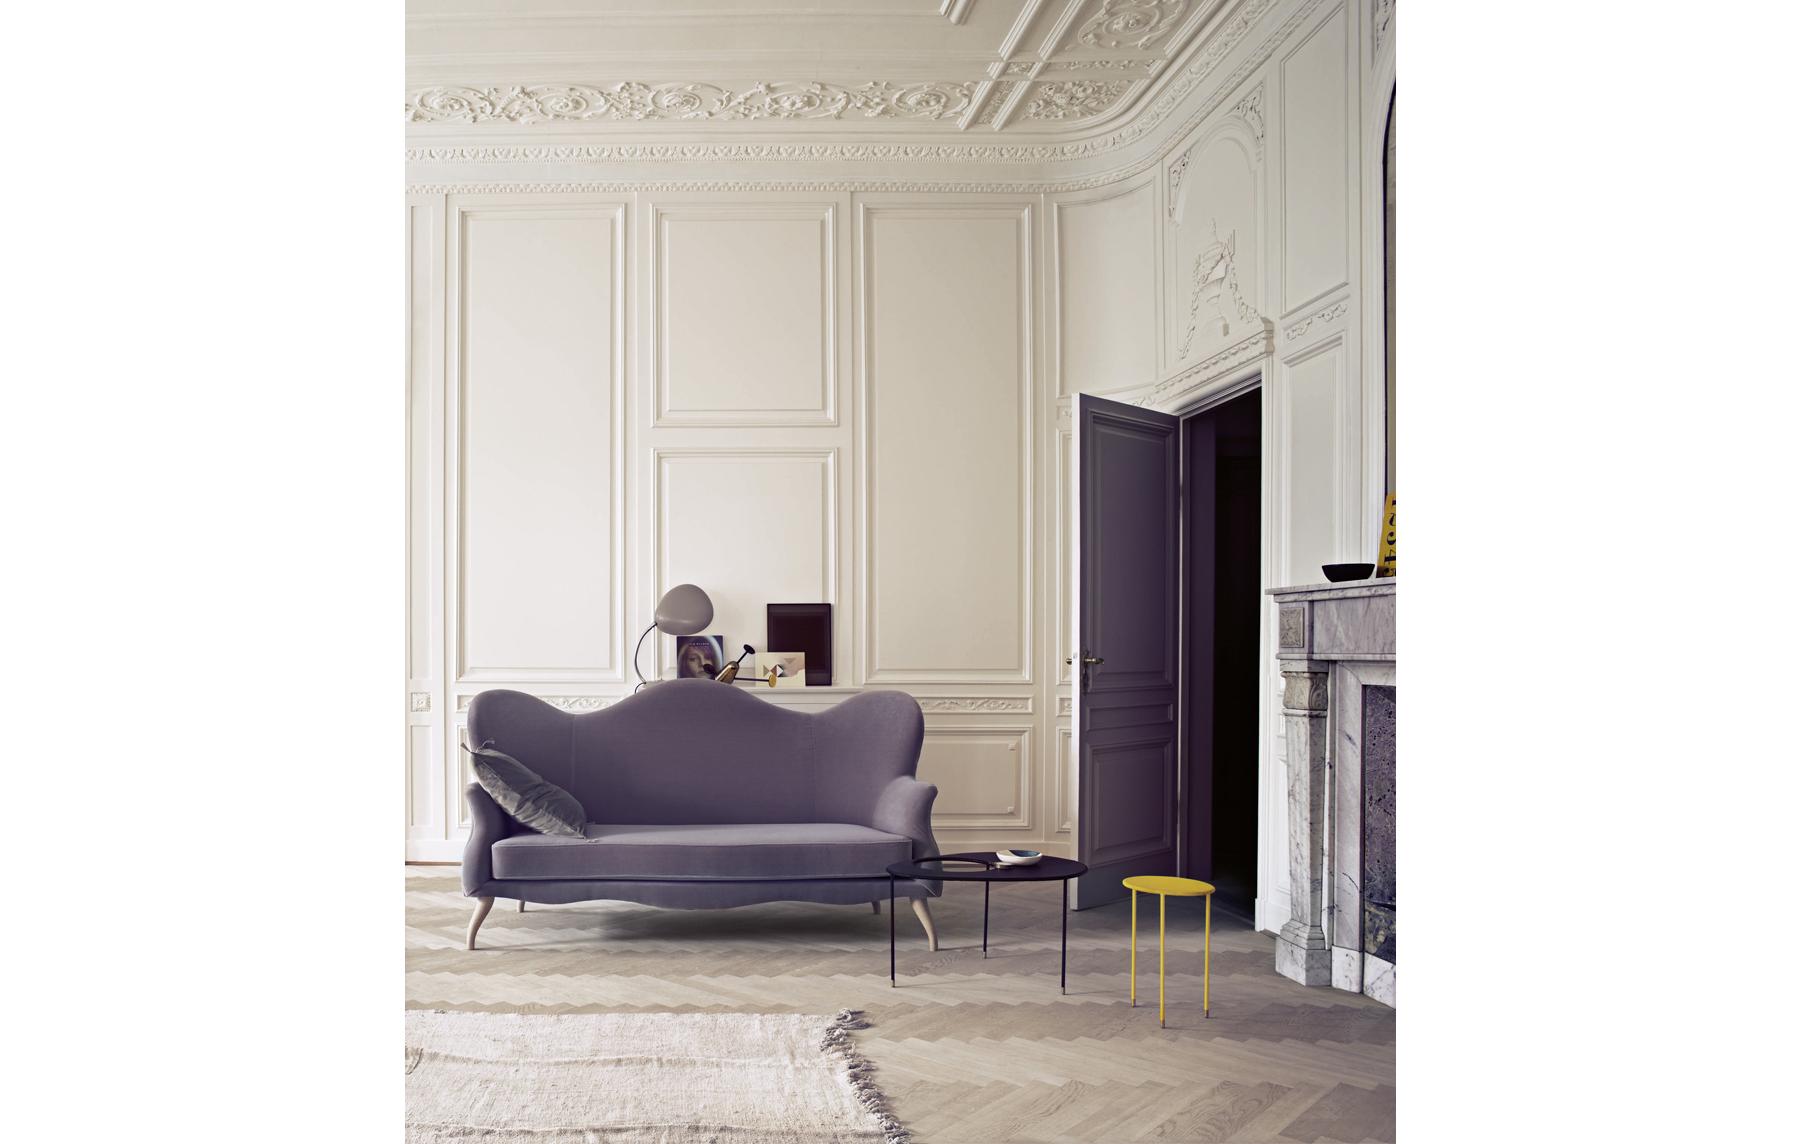 Violettfarbene Möbel für einen klassischen Look #sofa ©Gubi